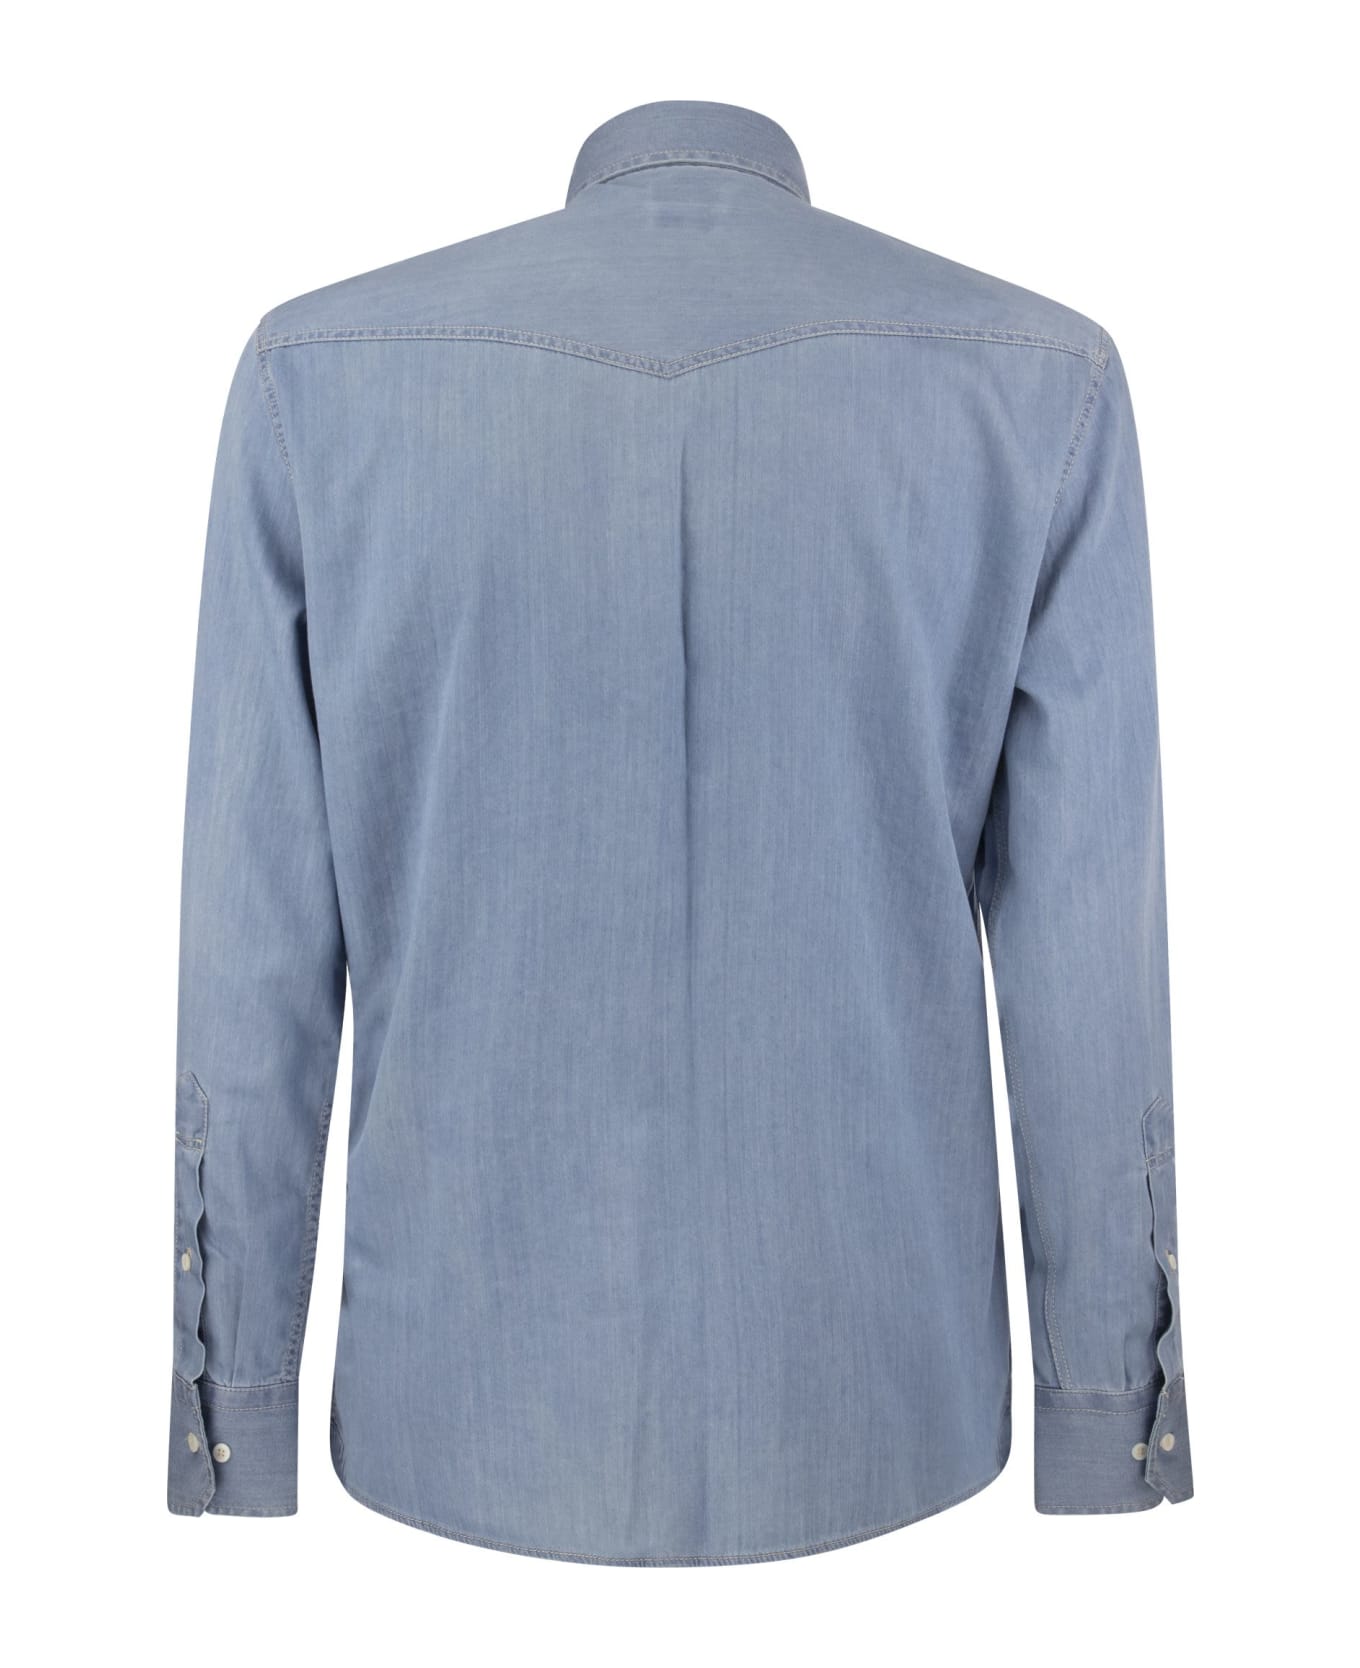 Brunello Cucinelli Lightweight Denim Leisure Fit Shirt With Press zip, Epaulettes And Pockets - DENIM CHIARO+198